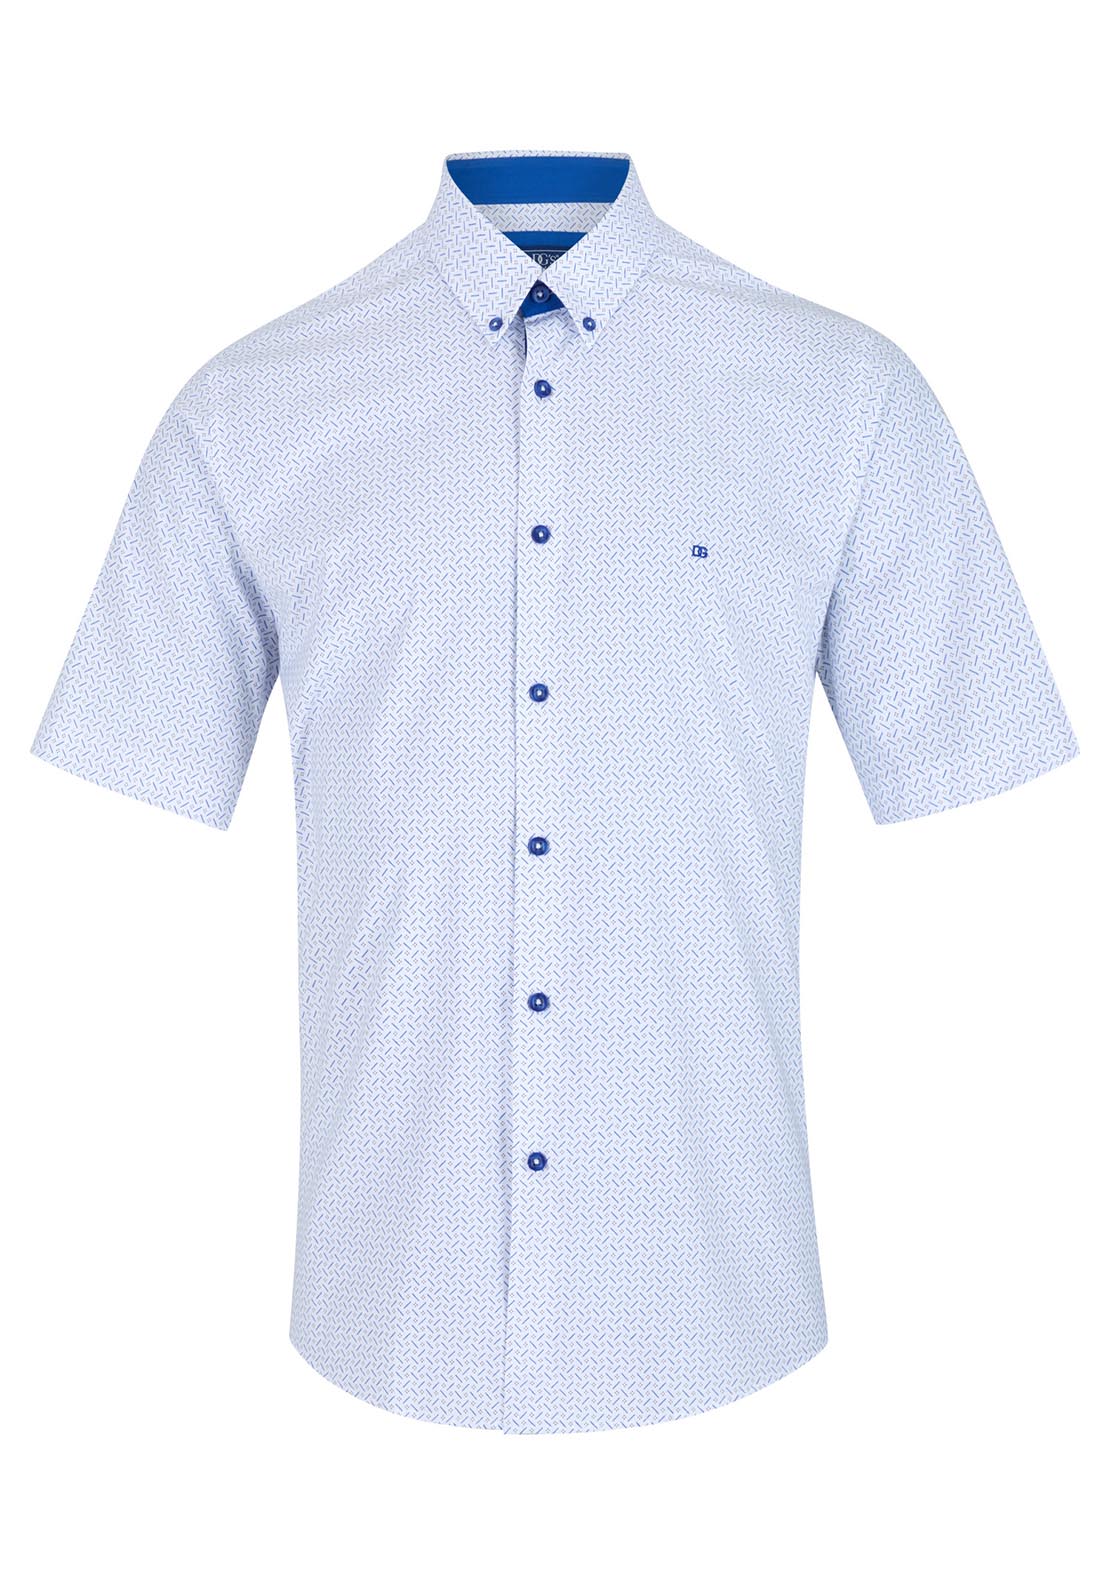 Drifter Short Sleeve Print Shirt 1 Shaws Department Stores